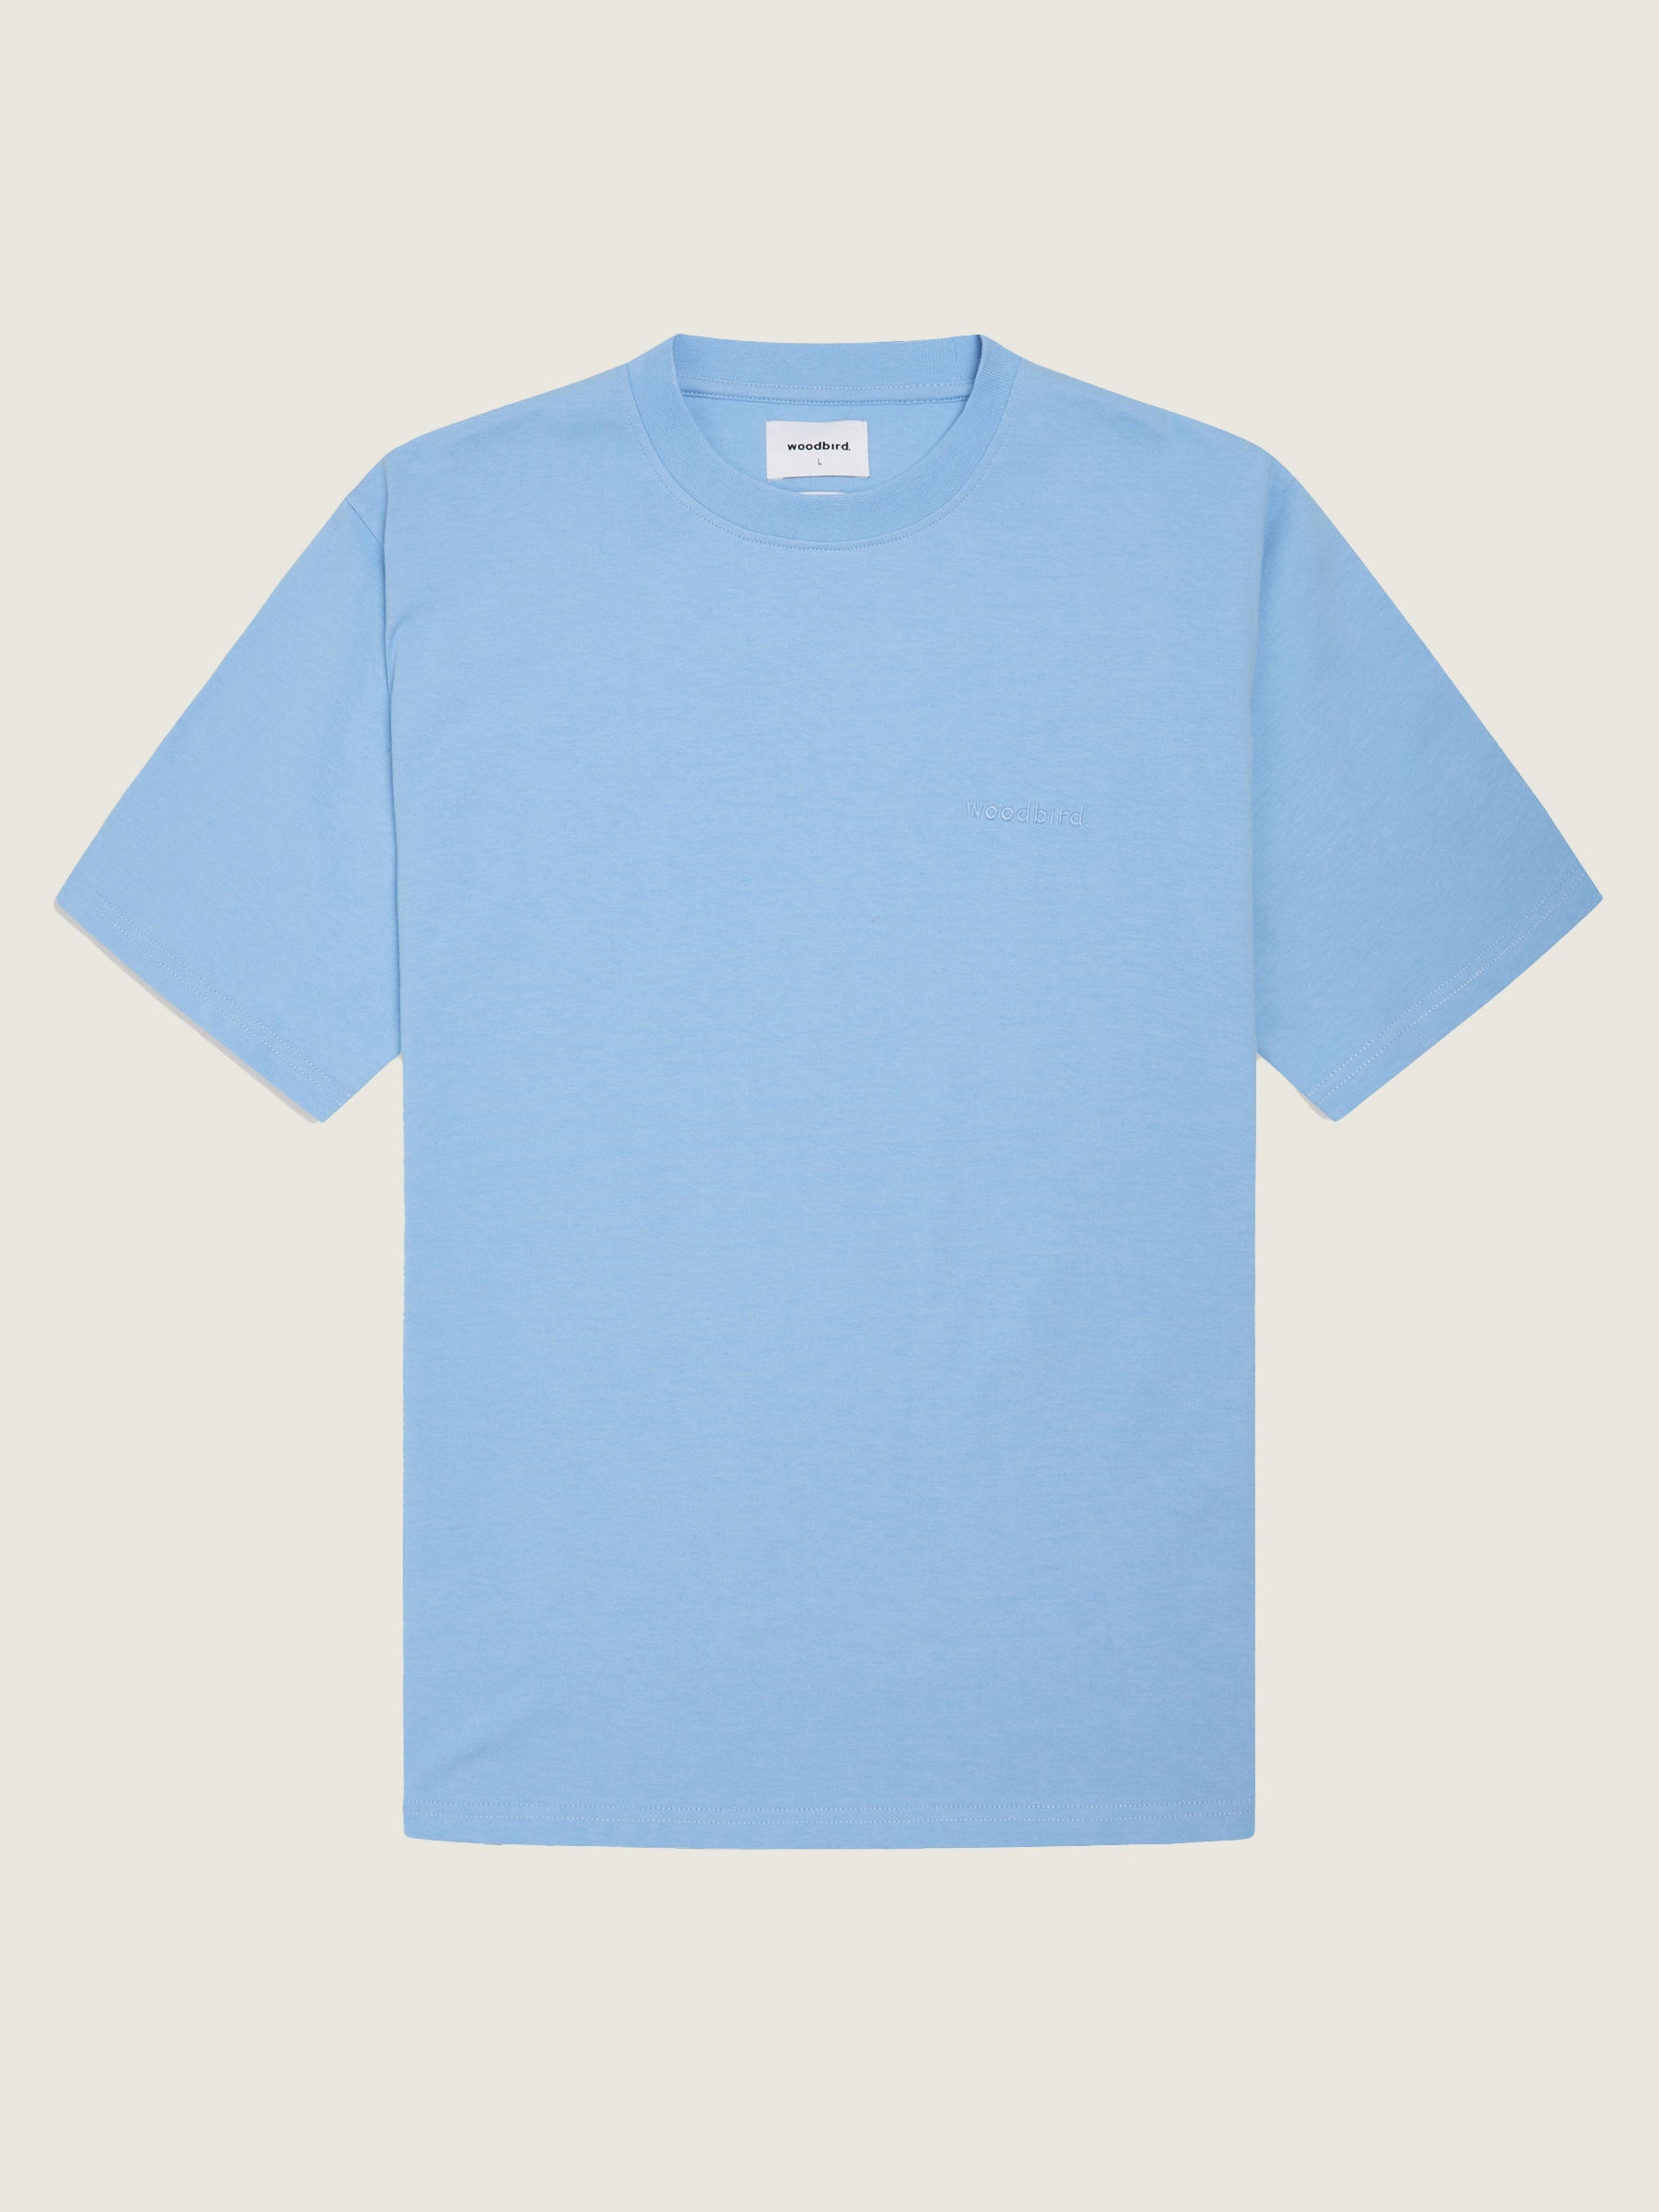 Woodbird  Baine Base Tee T-Shirts Light Blue